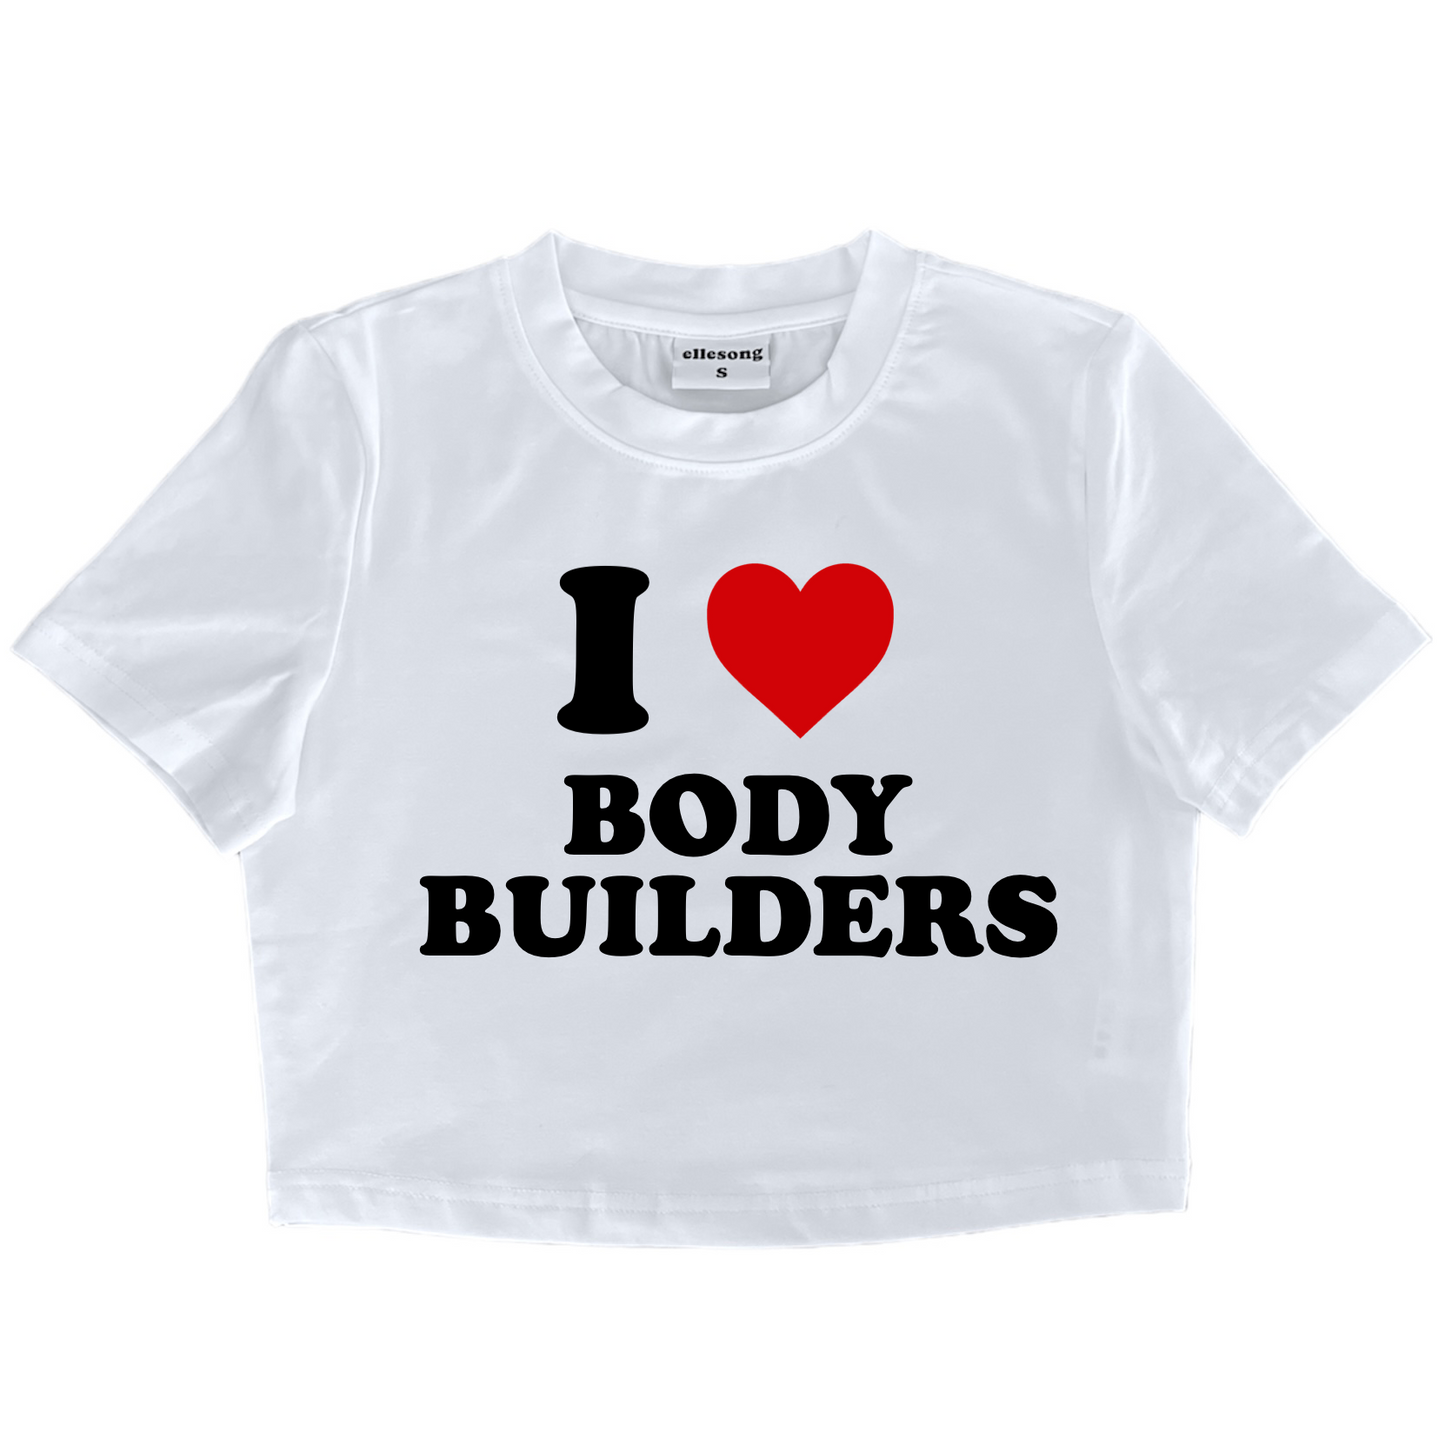 I Heart Body Builders Baby Tee